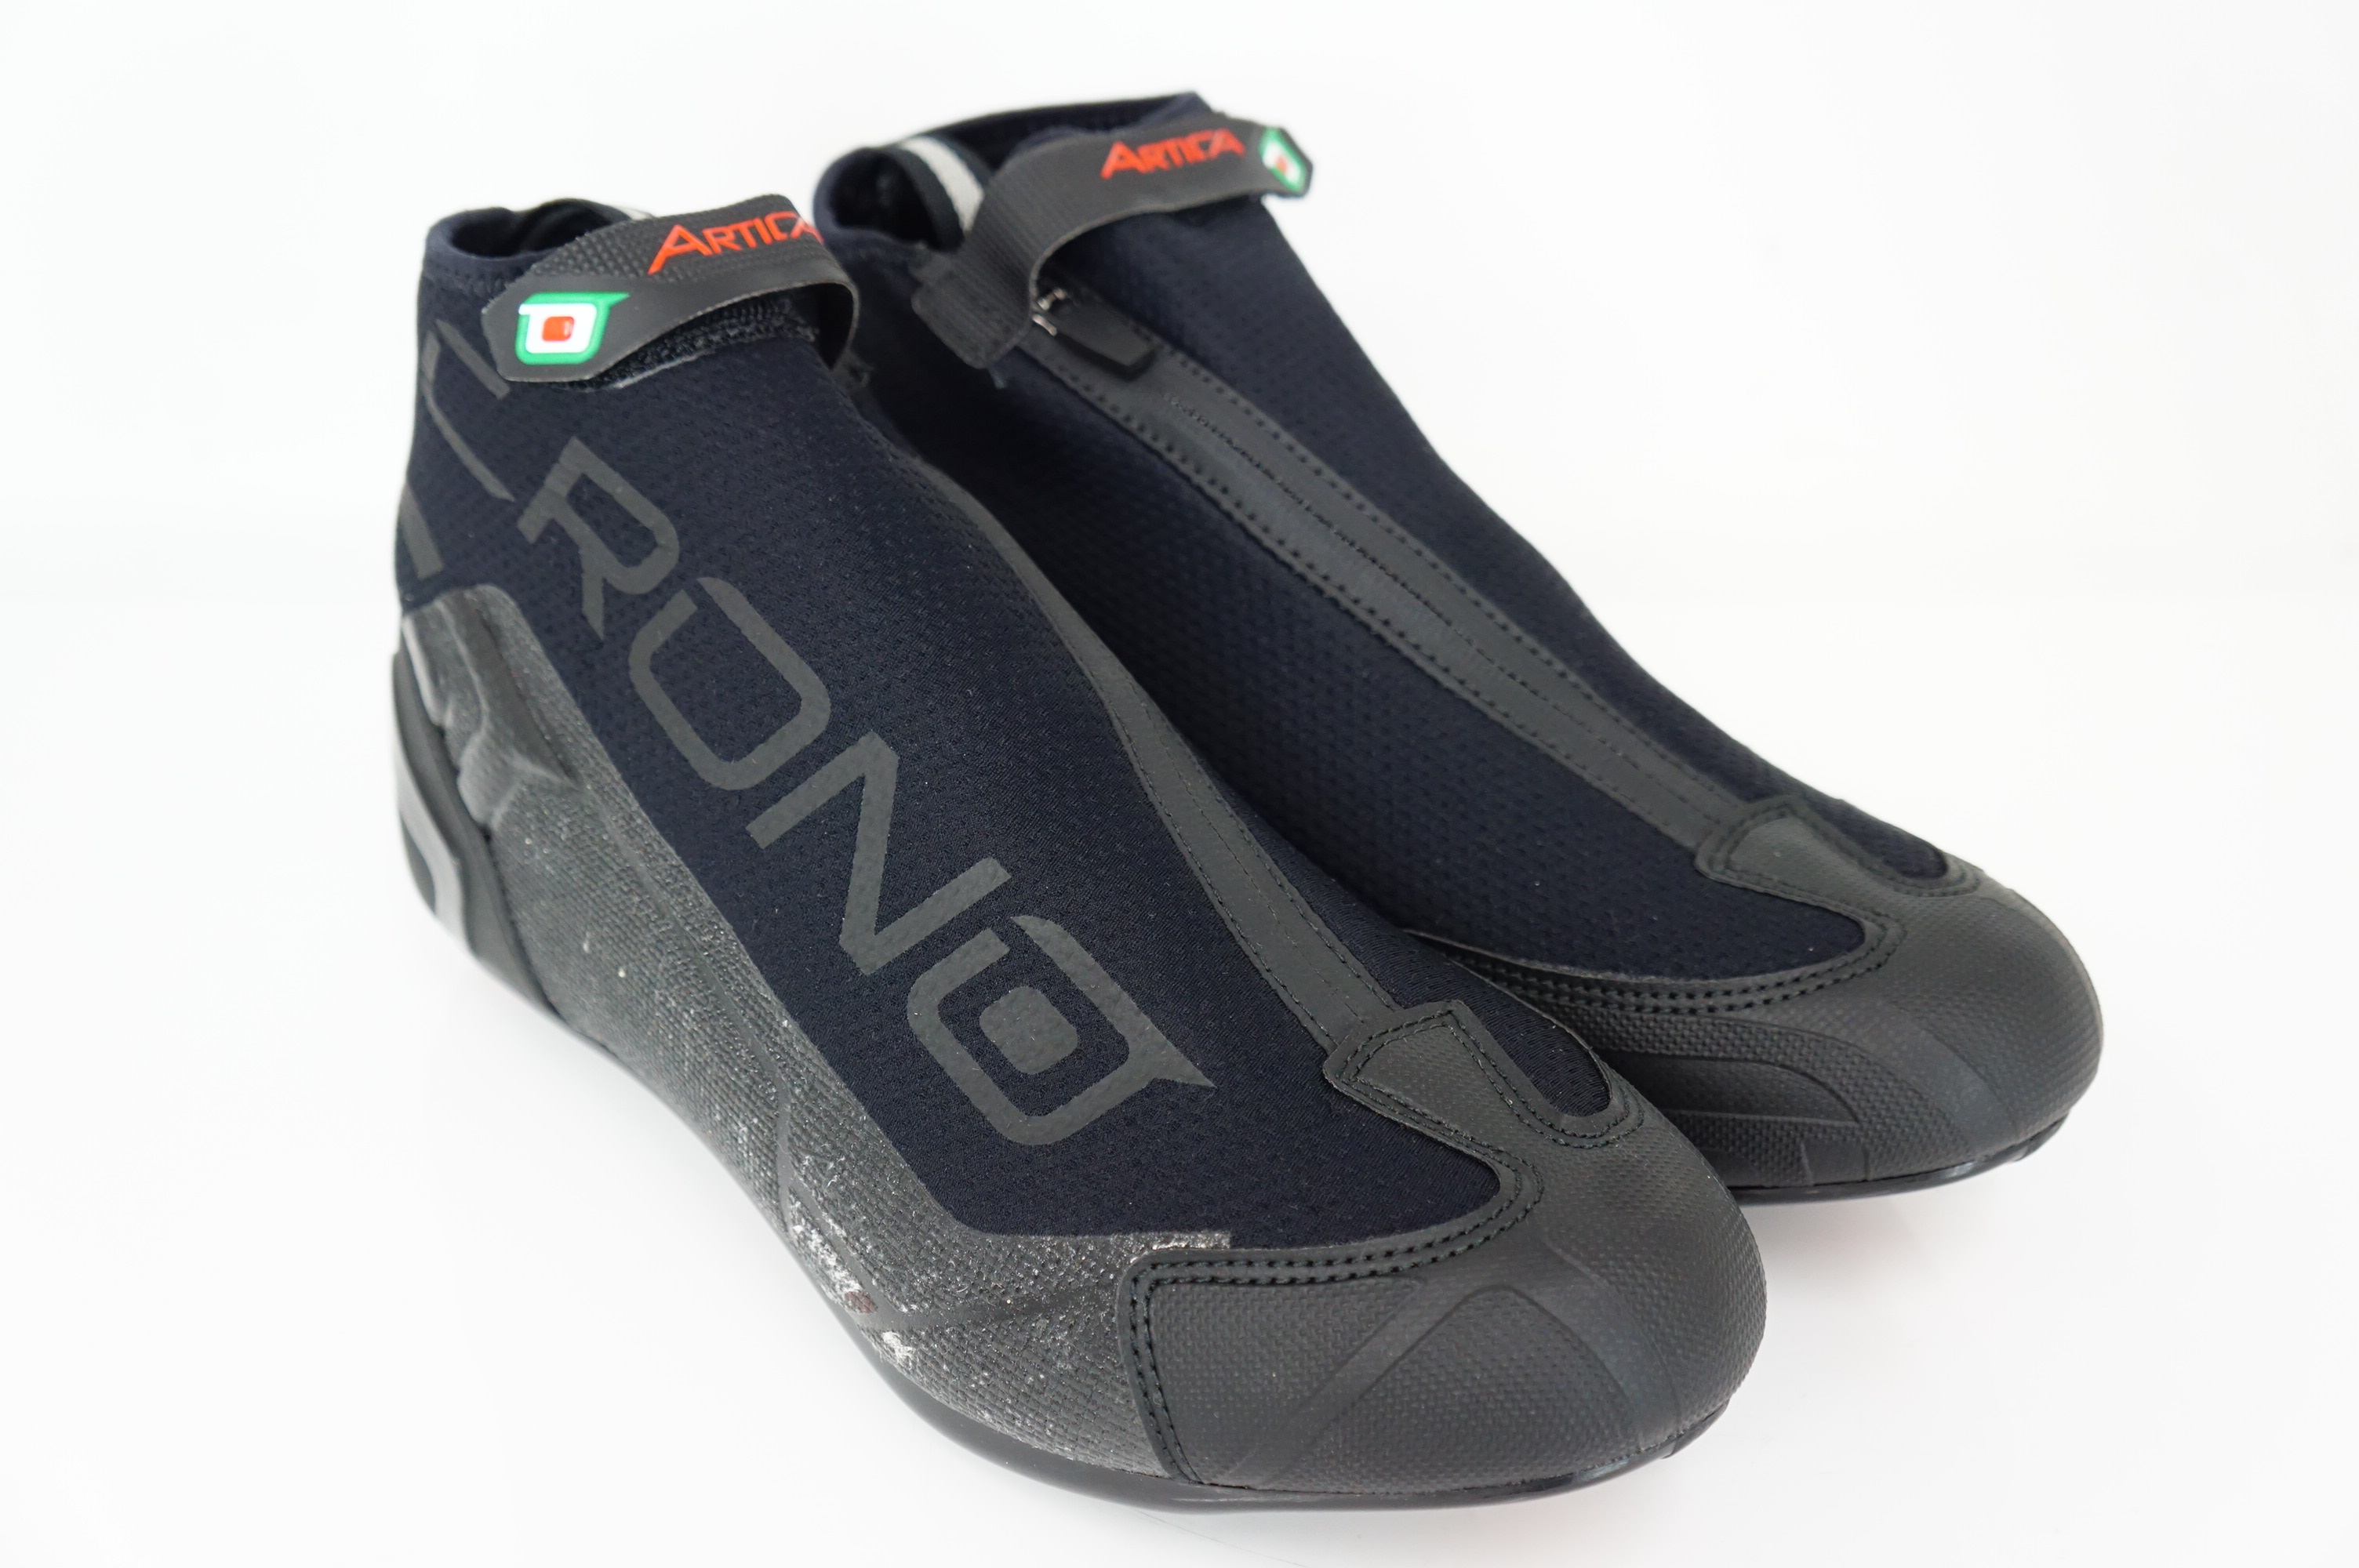 CRONO [ Chrono ] CW-1 41 size shoes /. peace base 